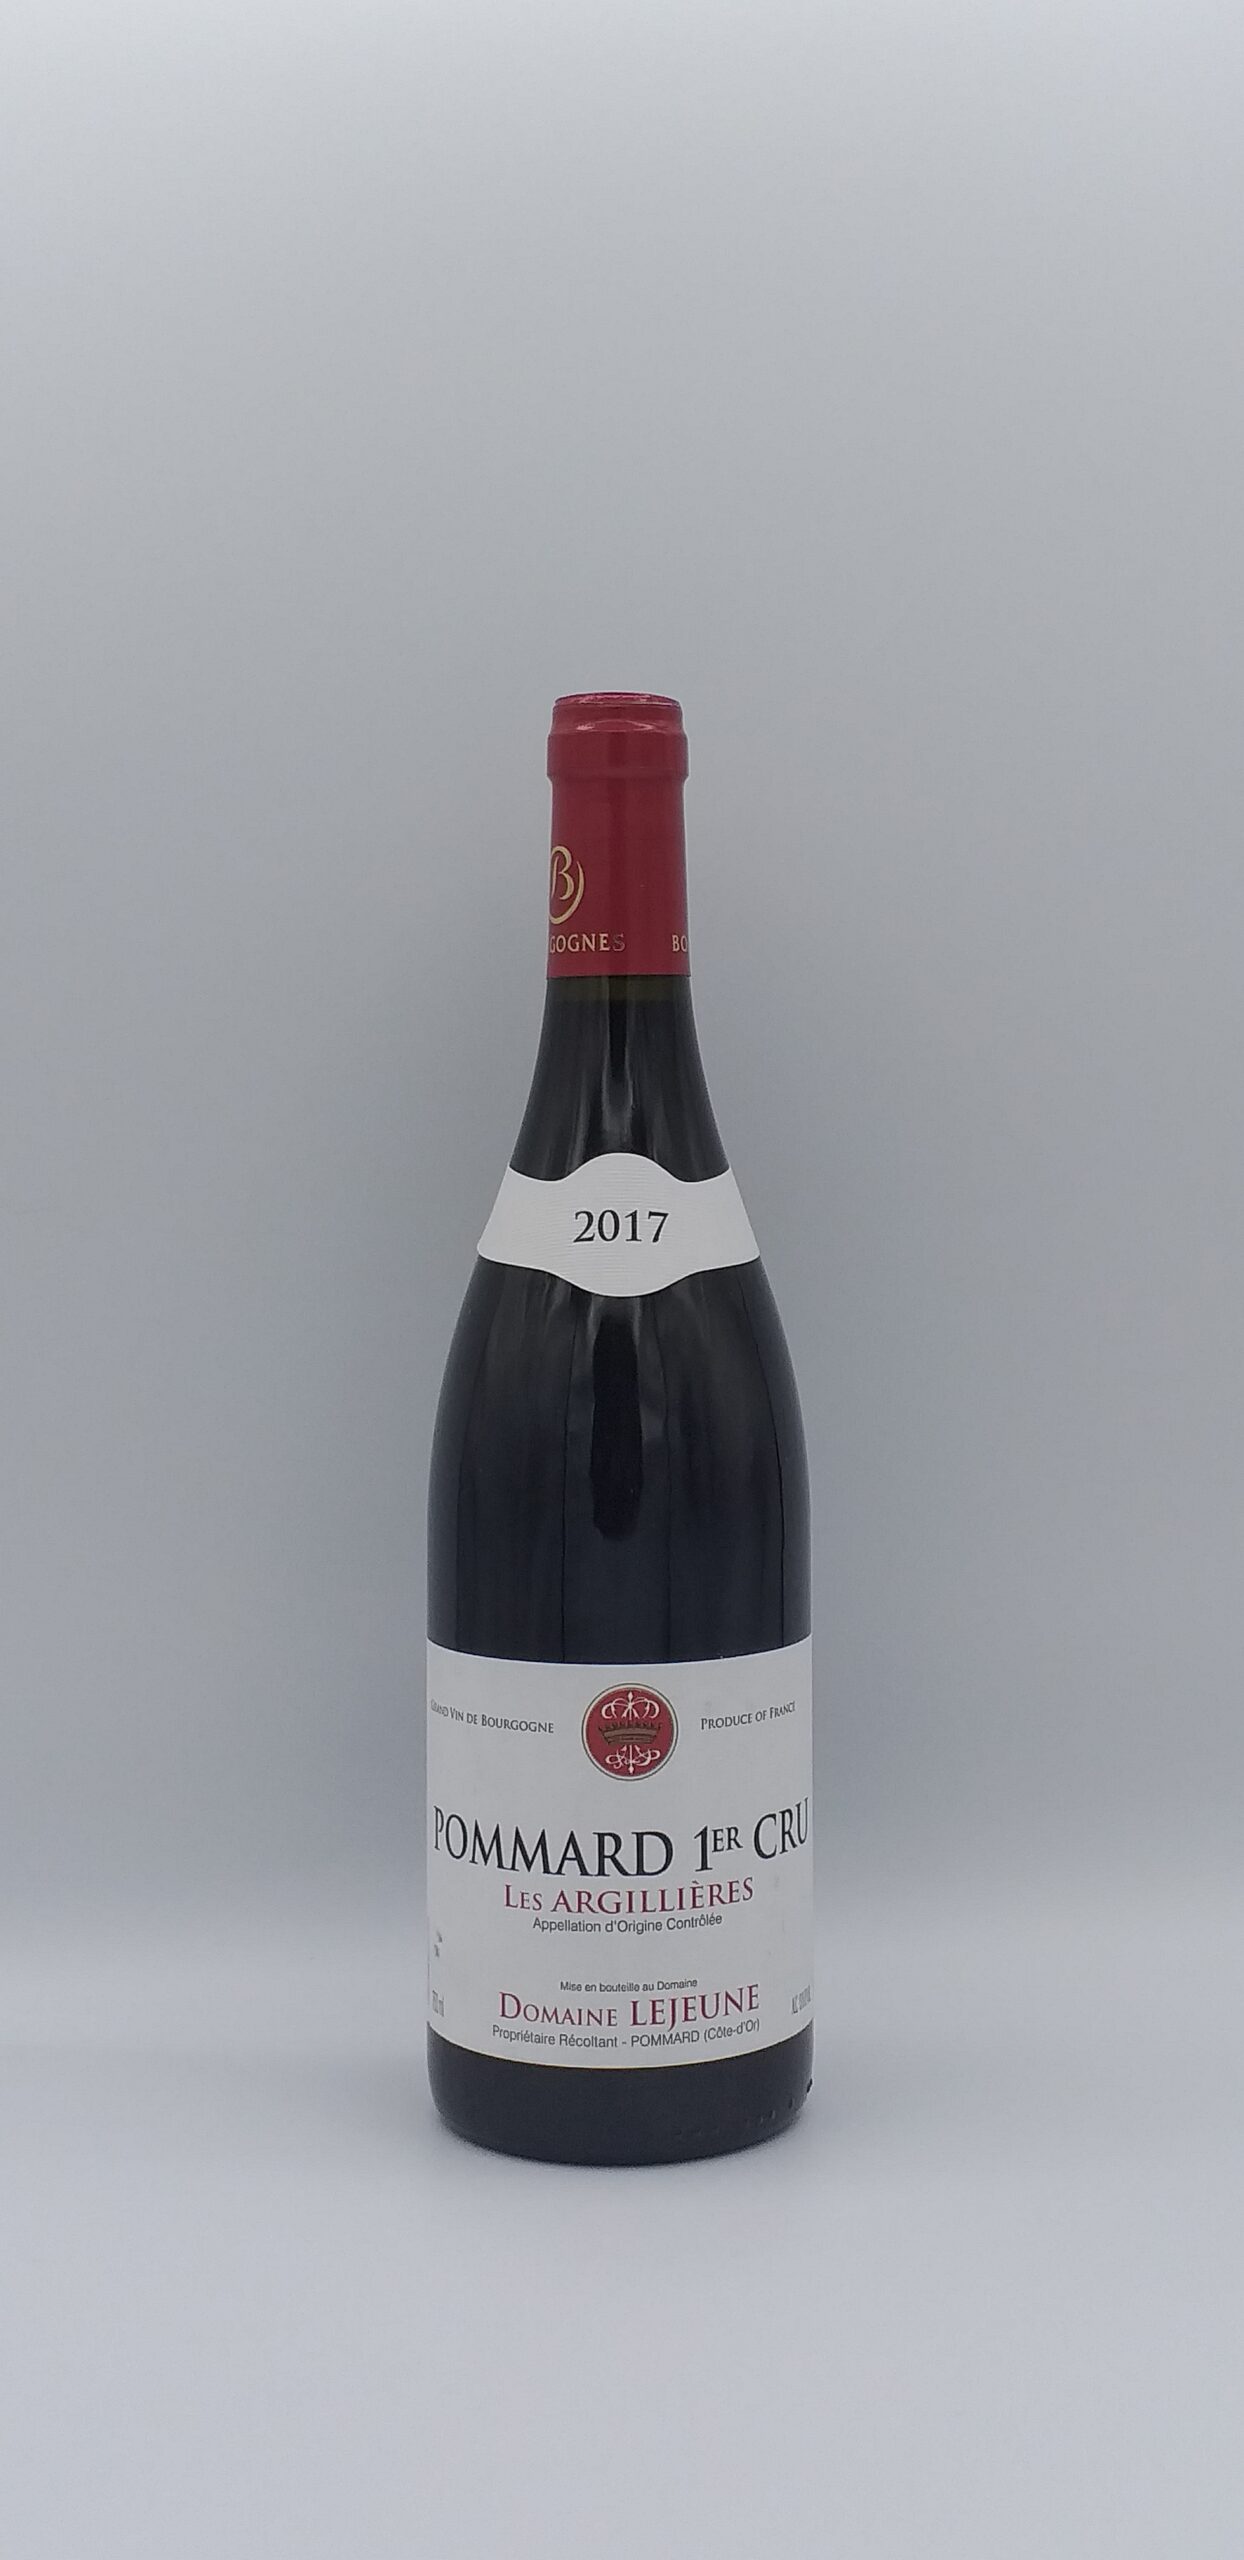 Bourgogne Pommard 1er cru “Les Argillières” 2017 Domaine Lejeune